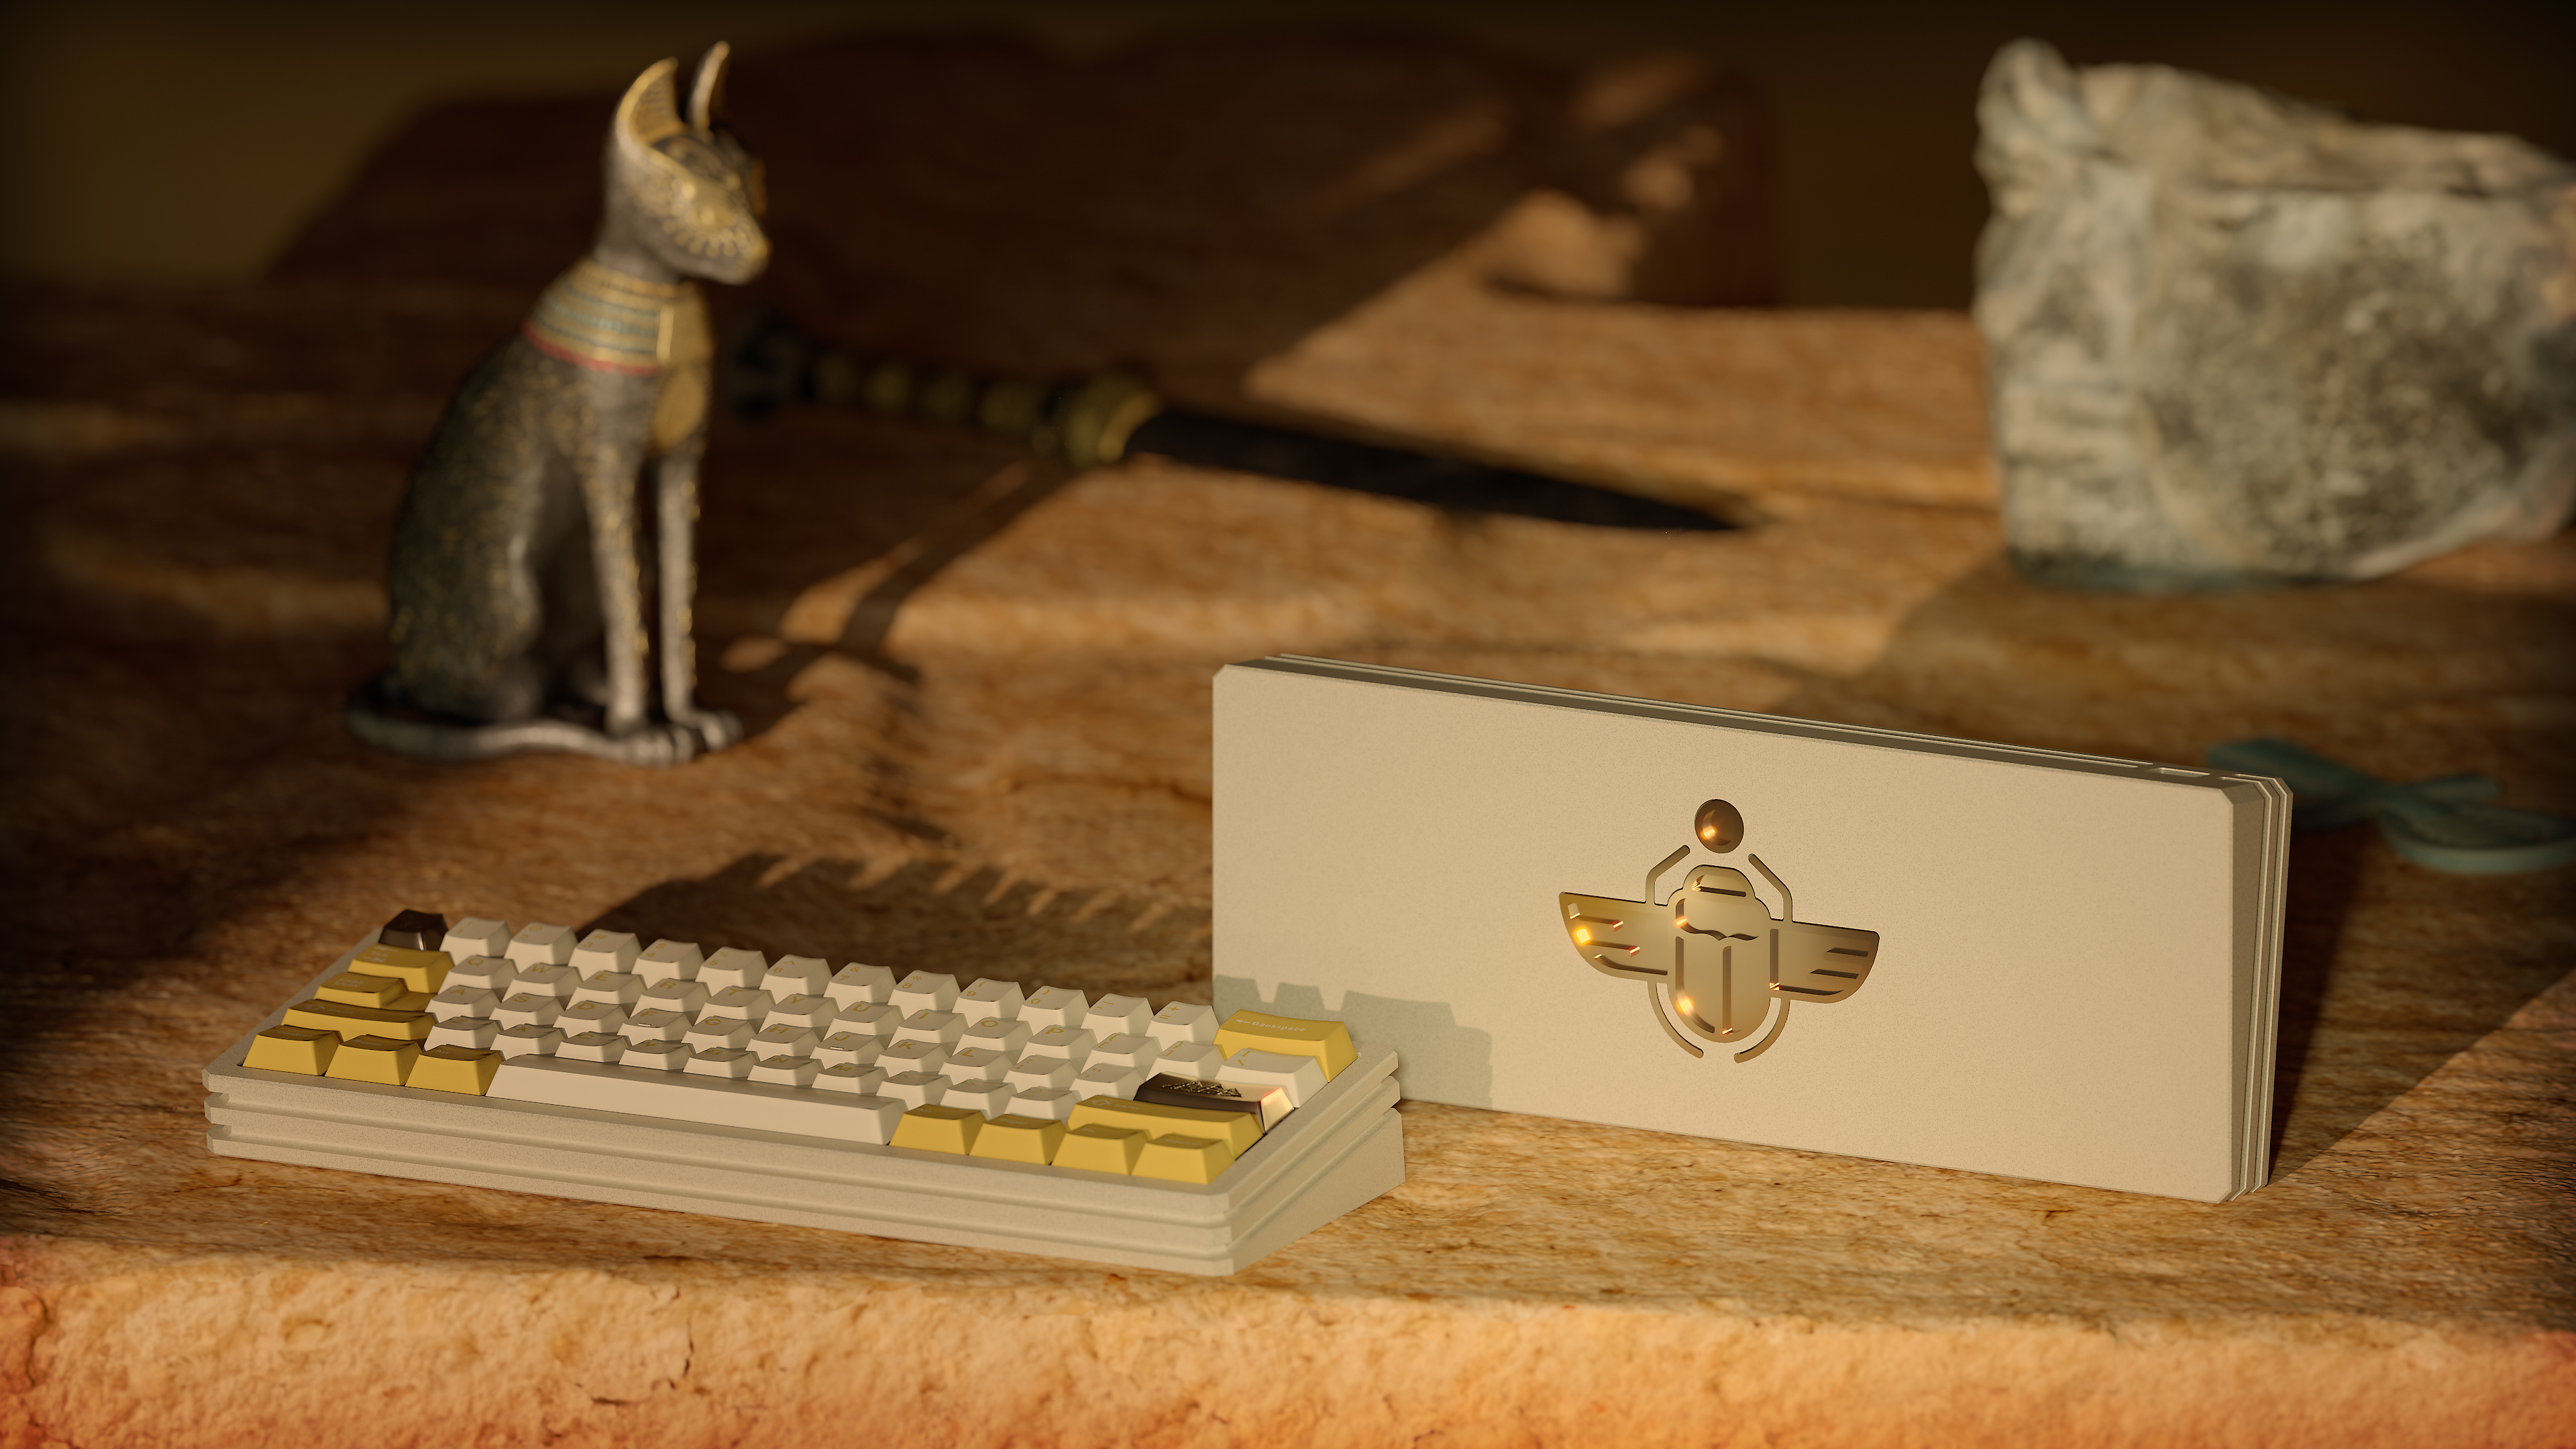 Egyptian Scarab, Egyptian keyboard, Ancient Egypt theme, Mystical charm, 3840x2160 4K Desktop